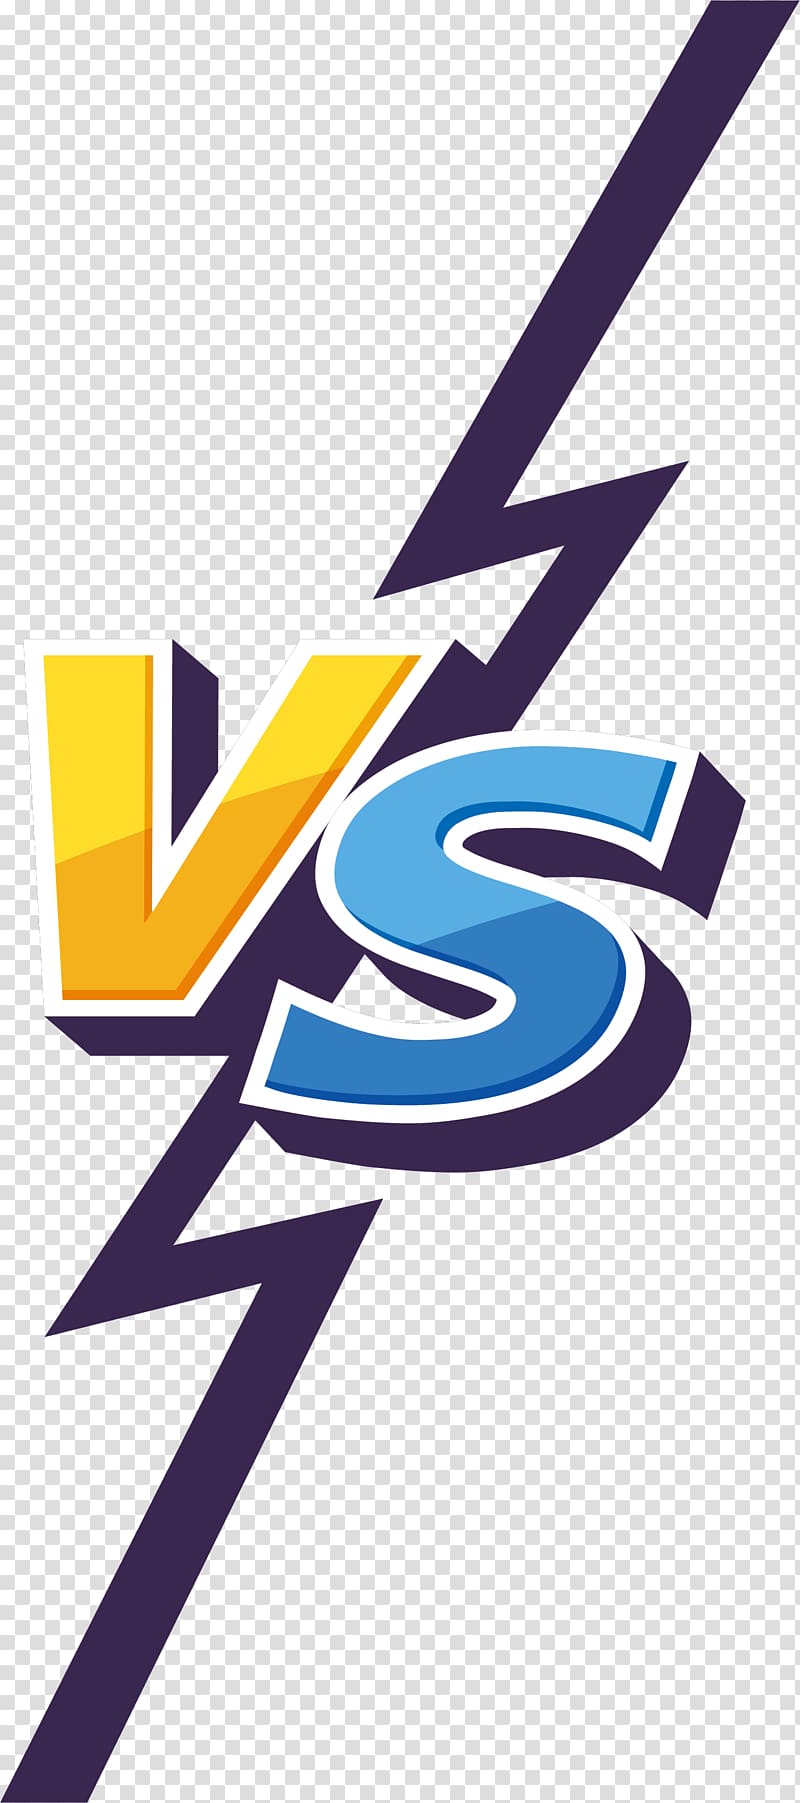 Vs Illustration Football Adobe Illustrator Lightning Contrast